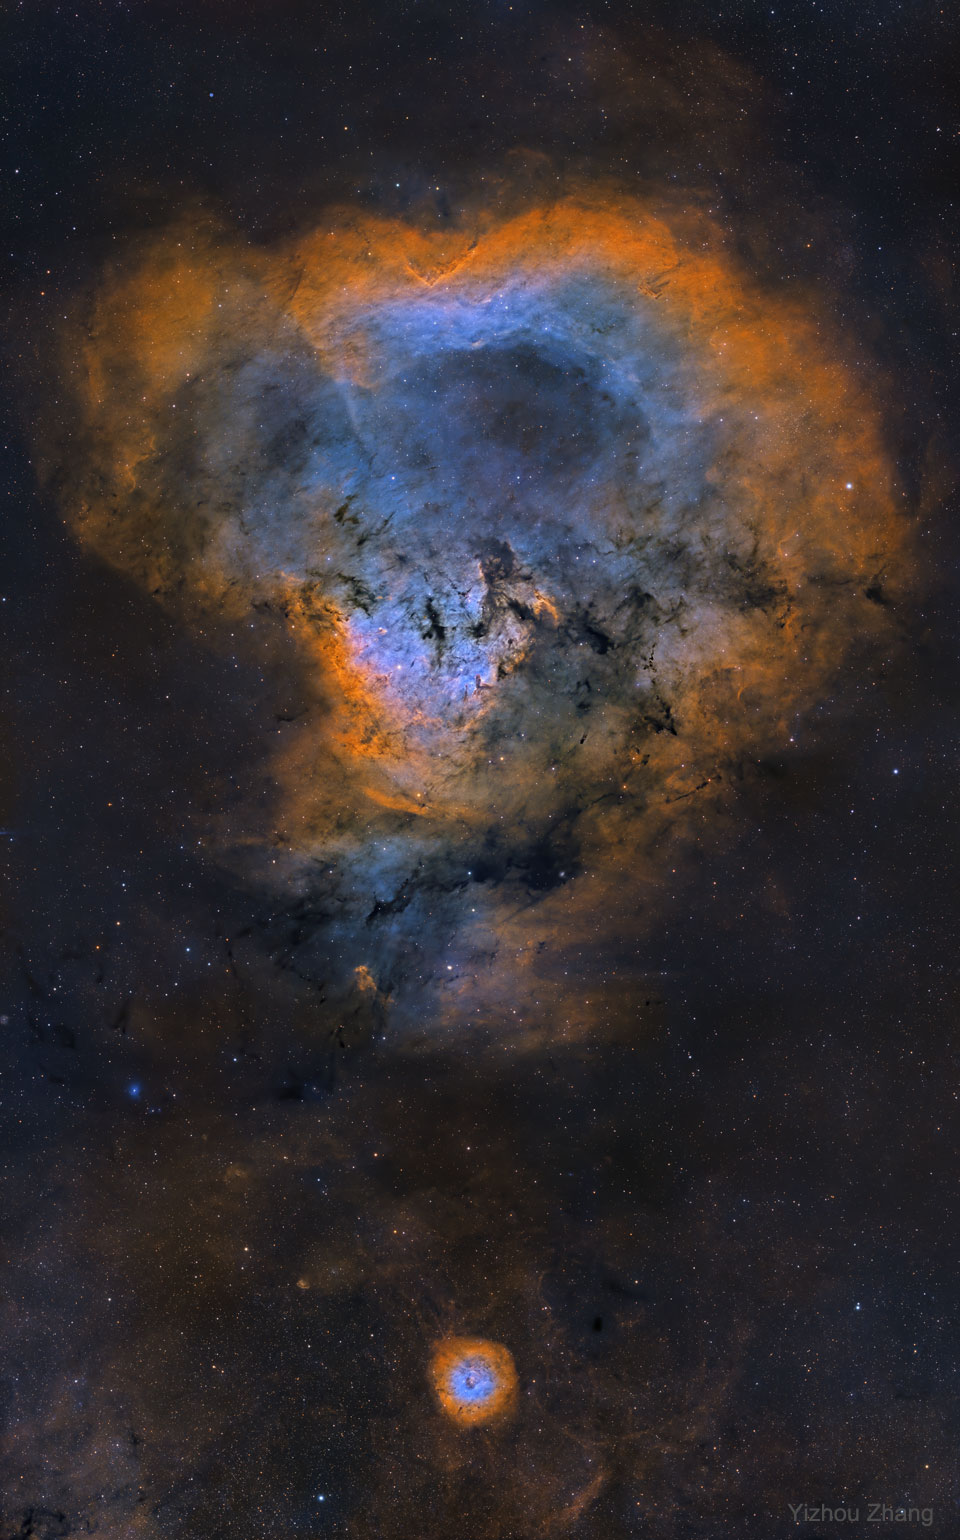 Zdjęcie przedstawia NGC 7822, znaną nieformalnie jako Mgławicę Kosmiczny Znak Zapytania. 
Więcej szczegółowych informacji w opisie poniżej.